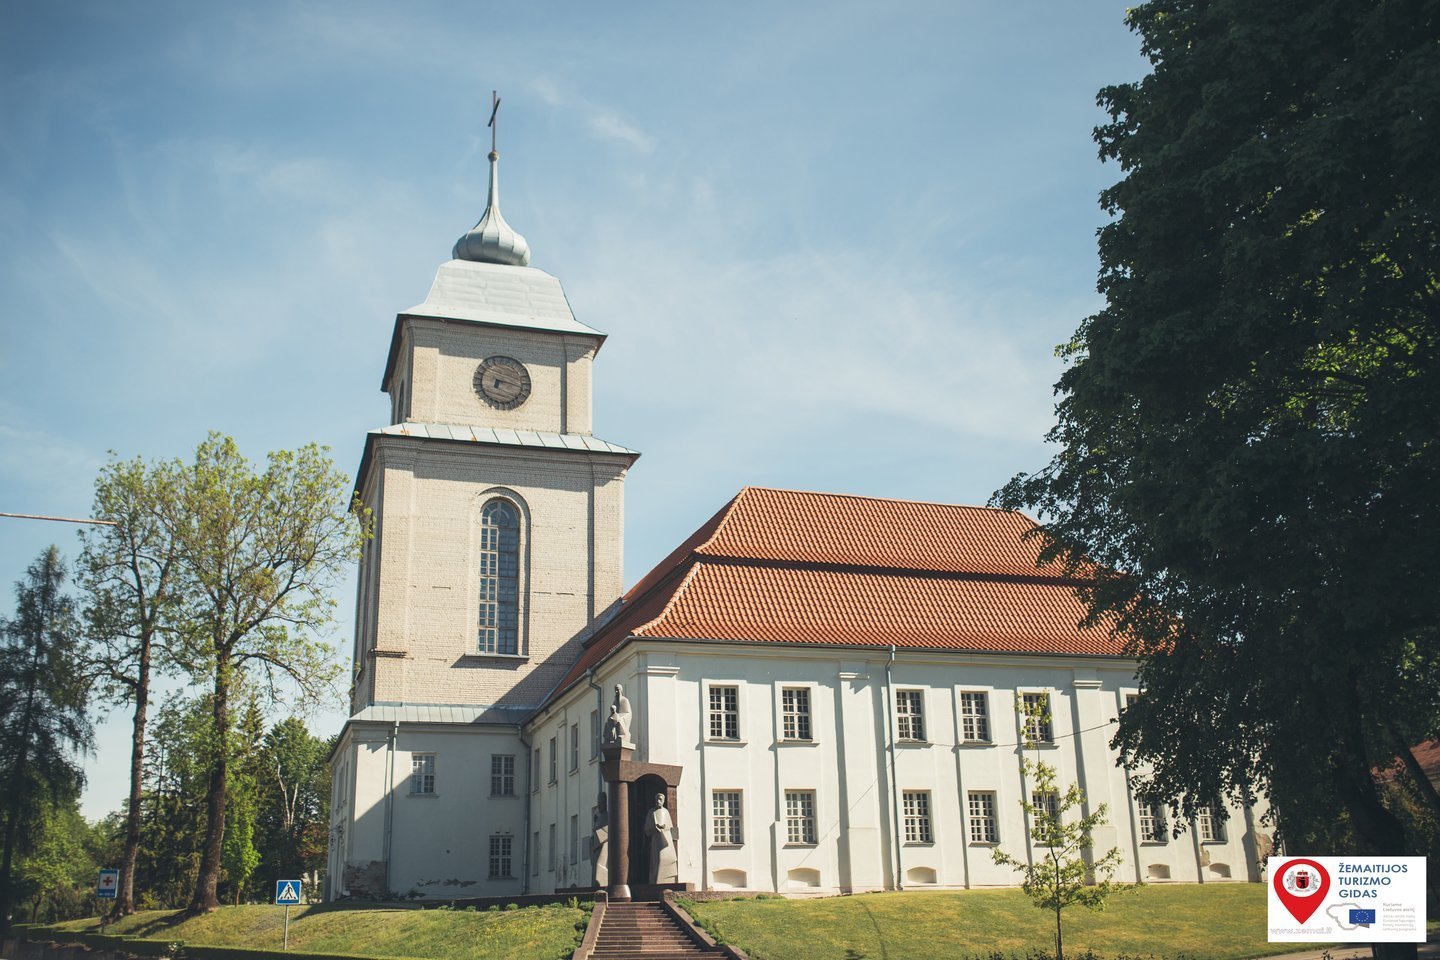 Žemaičių vyskupystės muziejaus pastatas Varniuose šių metų vasarą kvies į  varpinės bokštą, išplėstas ekspozicijų erdves, naujai atvertas  patalpas.<br>Žemaitijos turizmo centro nuotr.